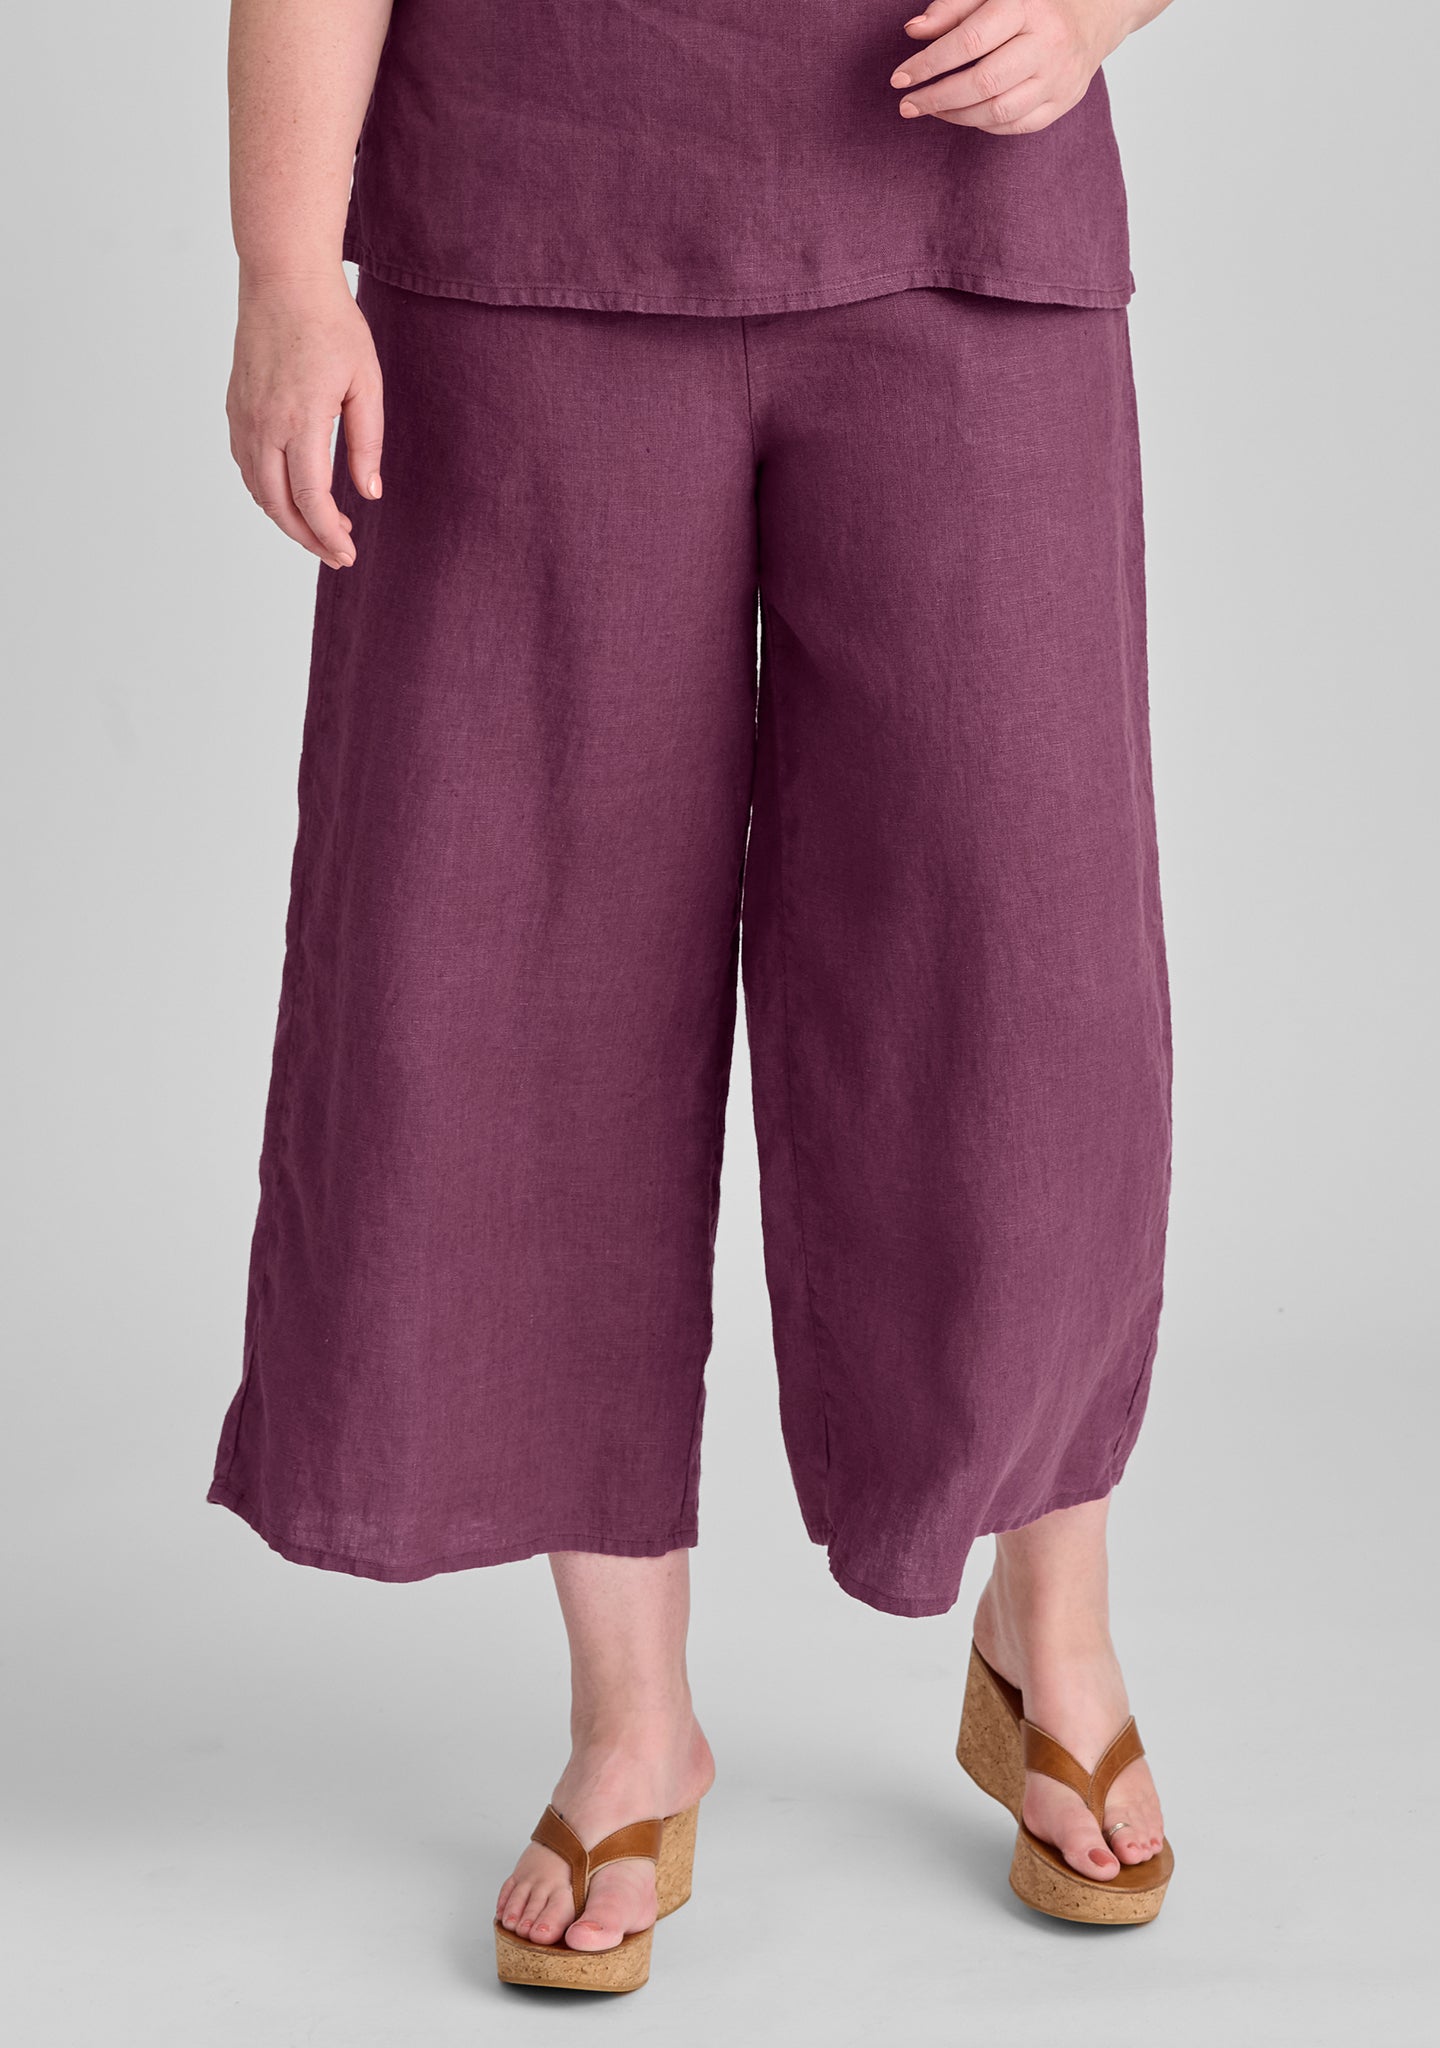 sociable flood wide leg linen pants purple